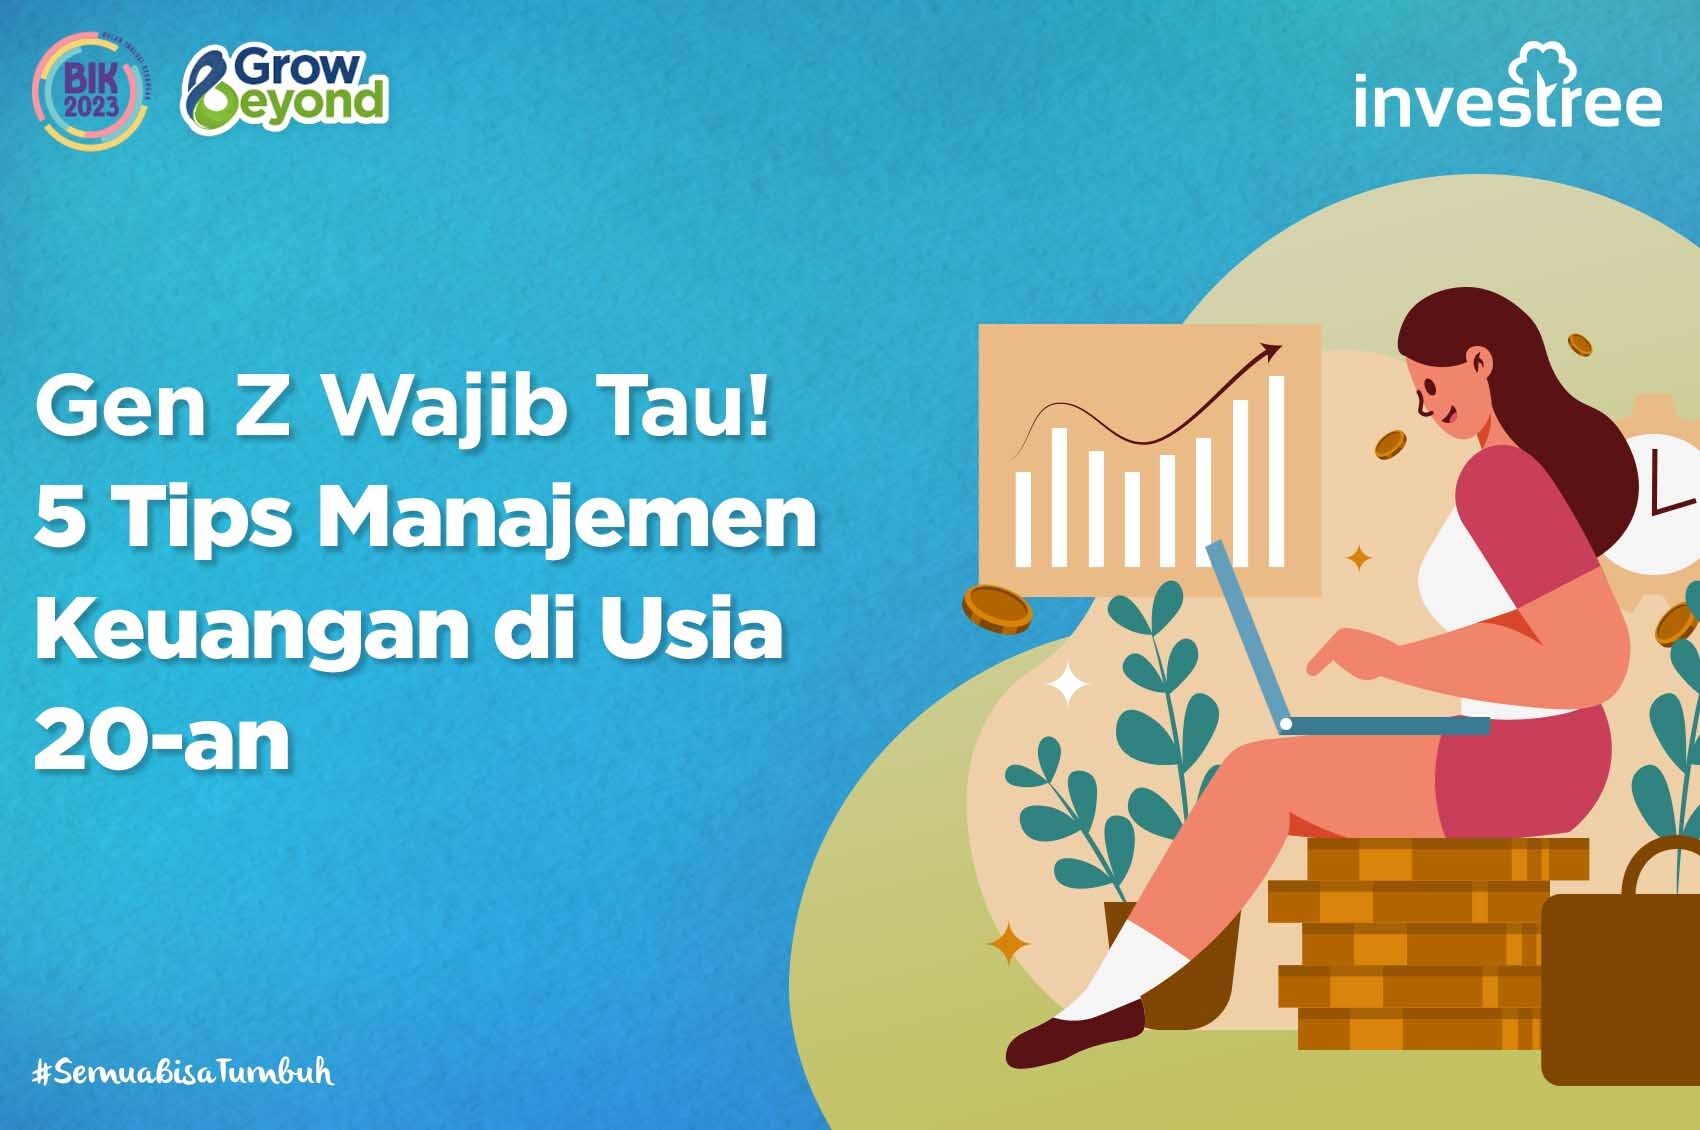 Gen Z Wajib Tau! 5 Tips Manajemen Keuangan di Usia 20-an